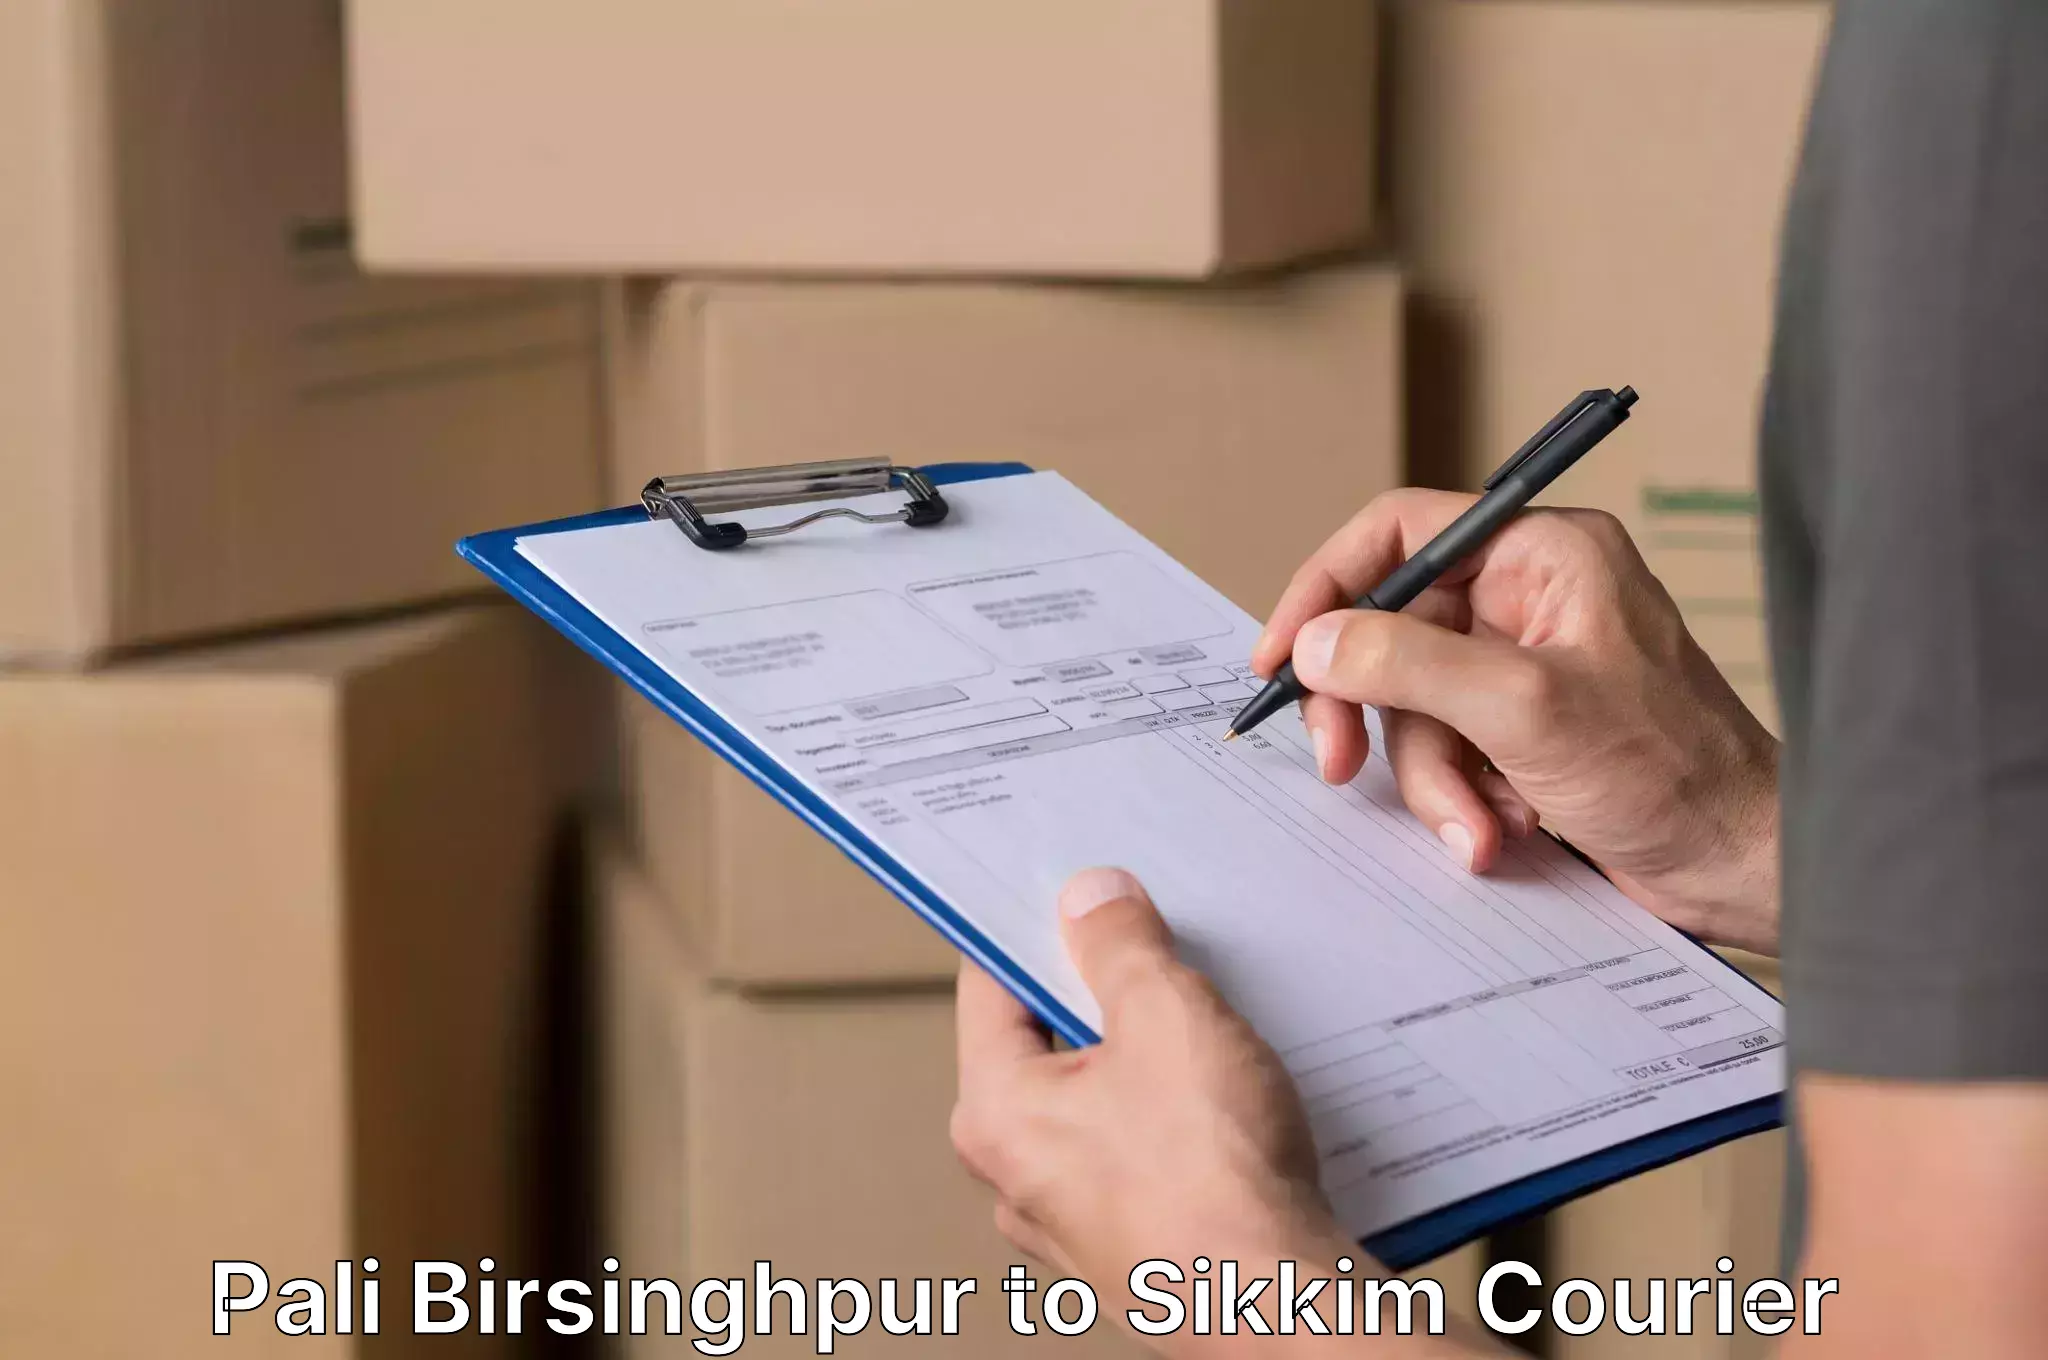 Furniture delivery service Pali Birsinghpur to Rangpo